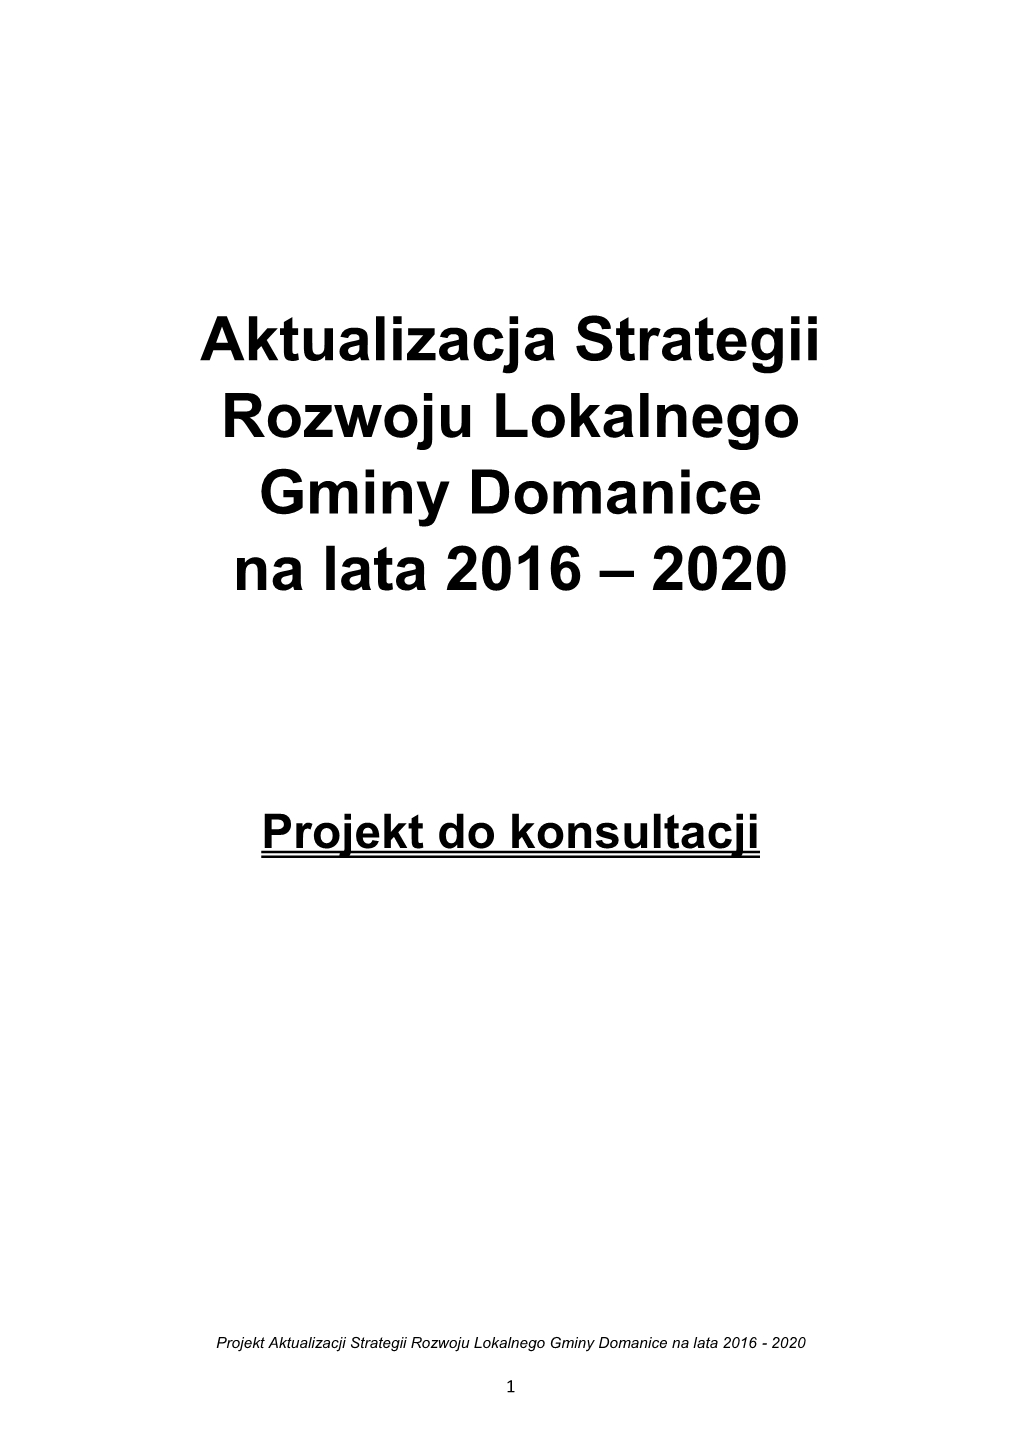 Aktualizacja Strategii Rozwoju Lokalnego Gminy Domanice Na Lata 2016 – 2020